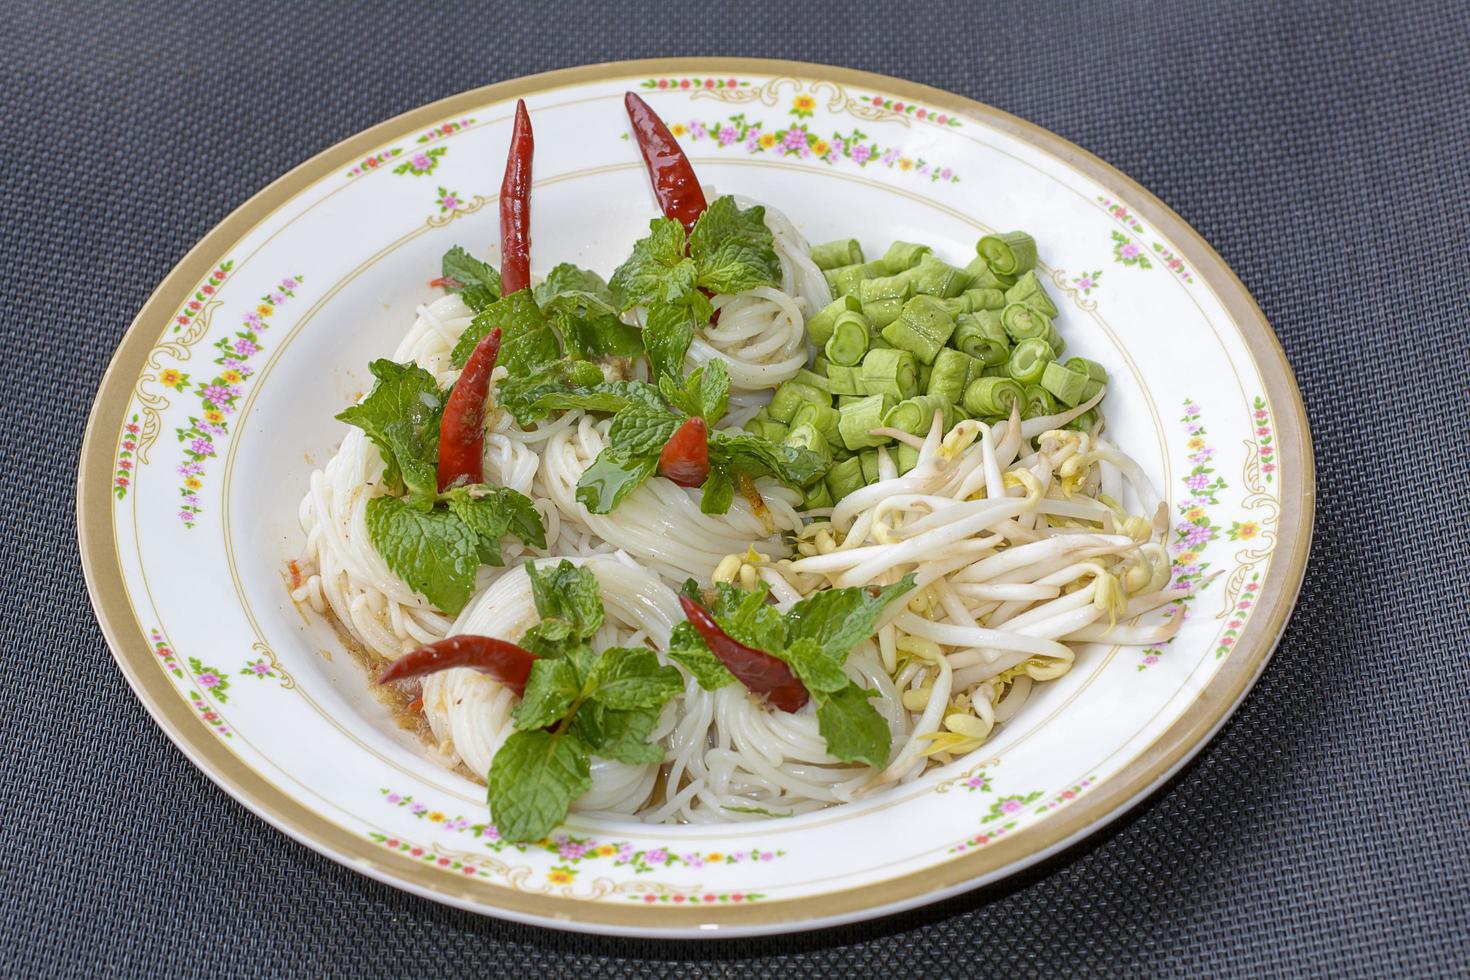 les nouilles de riz dans une sauce au curry de poisson avec des légumes ou des vermicelles thaïlandais mangés avec du curry sont des plats thaïlandais. le plat est une cuisine délicieuse et épicée. photo